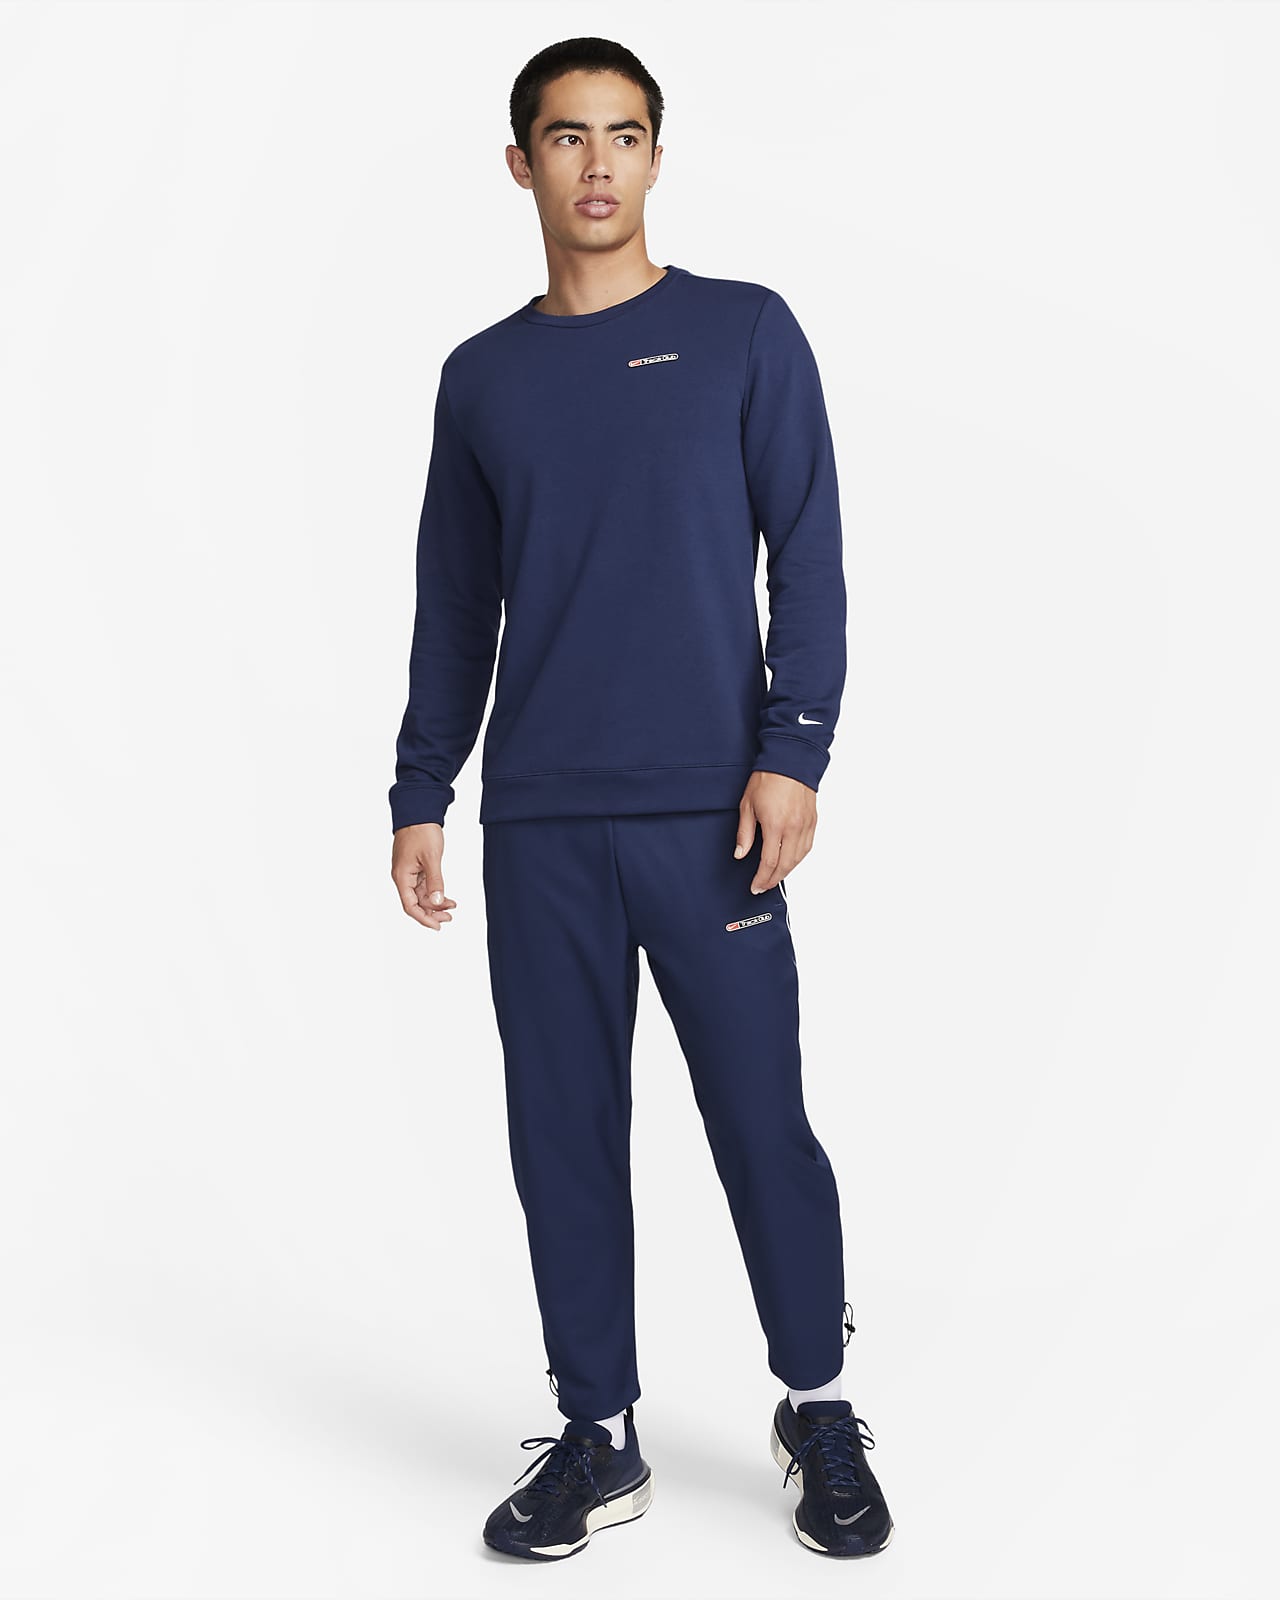 Nike Men's Dri-FIT Fleece Fitness Trousers. Nike LU